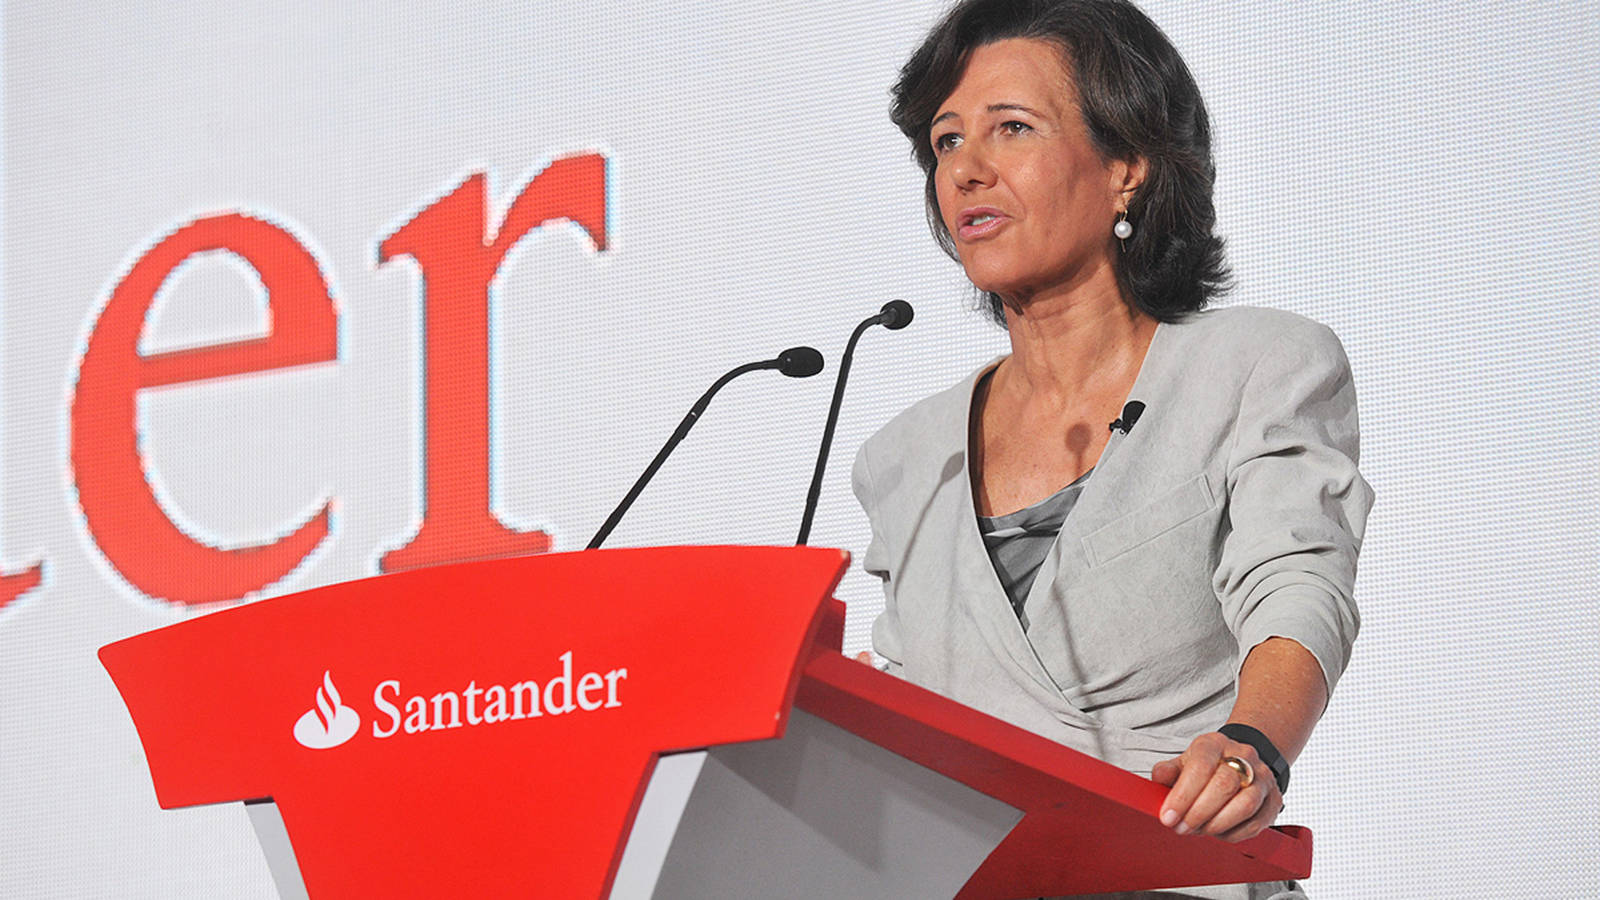 Toda la banca se lanza a robar clientes al Santander tras el comisionazo de la 1, 2, 3. Noticias de Empresas